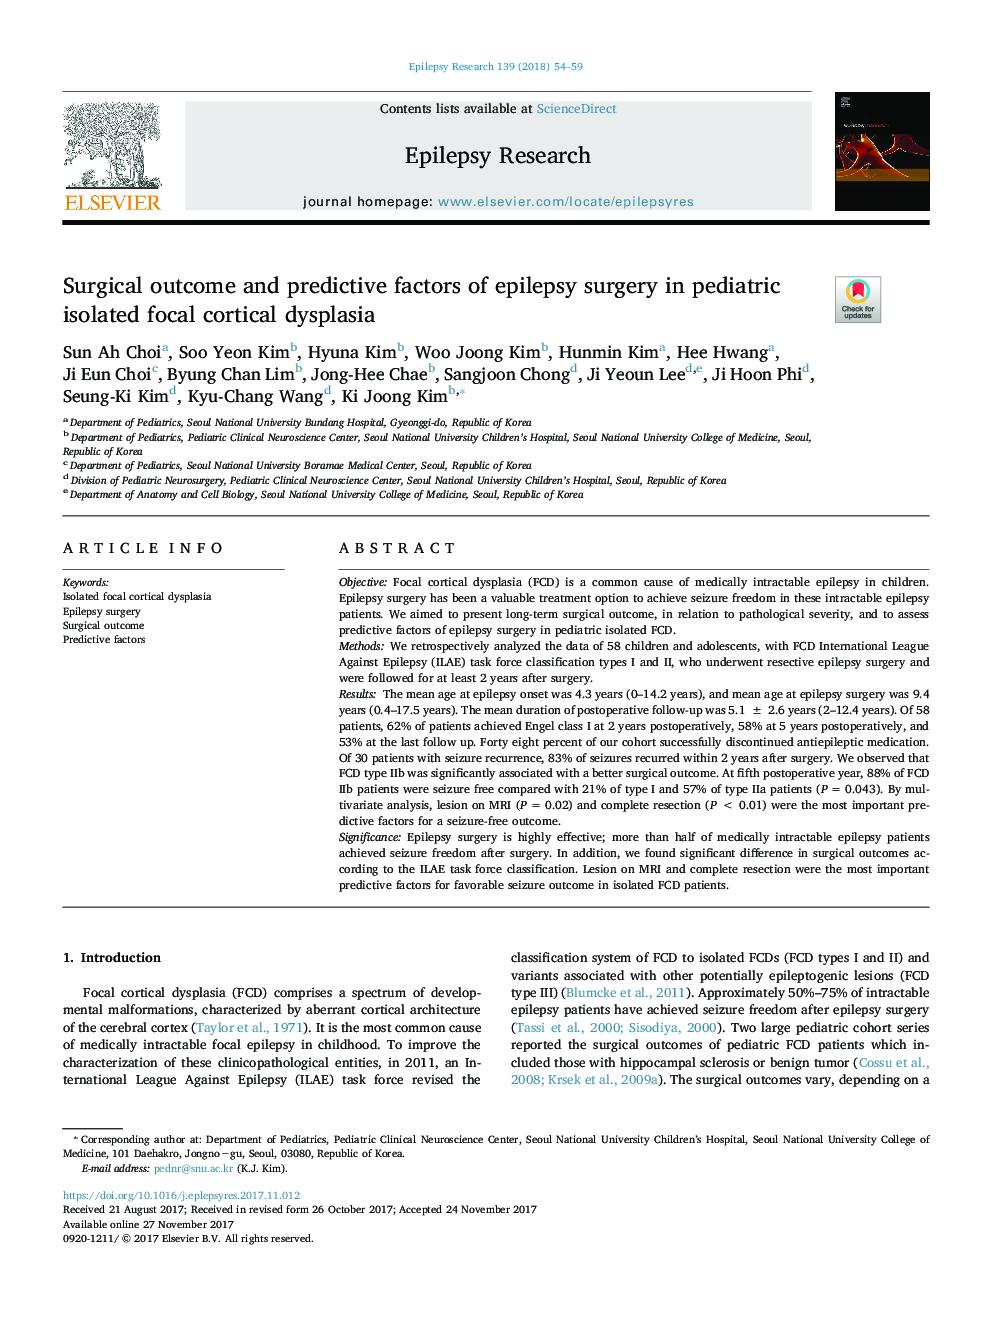 نتیجه جراحی و عوامل پیش بینی کننده جراحی صرع در پرده بکارت کانال کودکان جدا شده از کودکان 